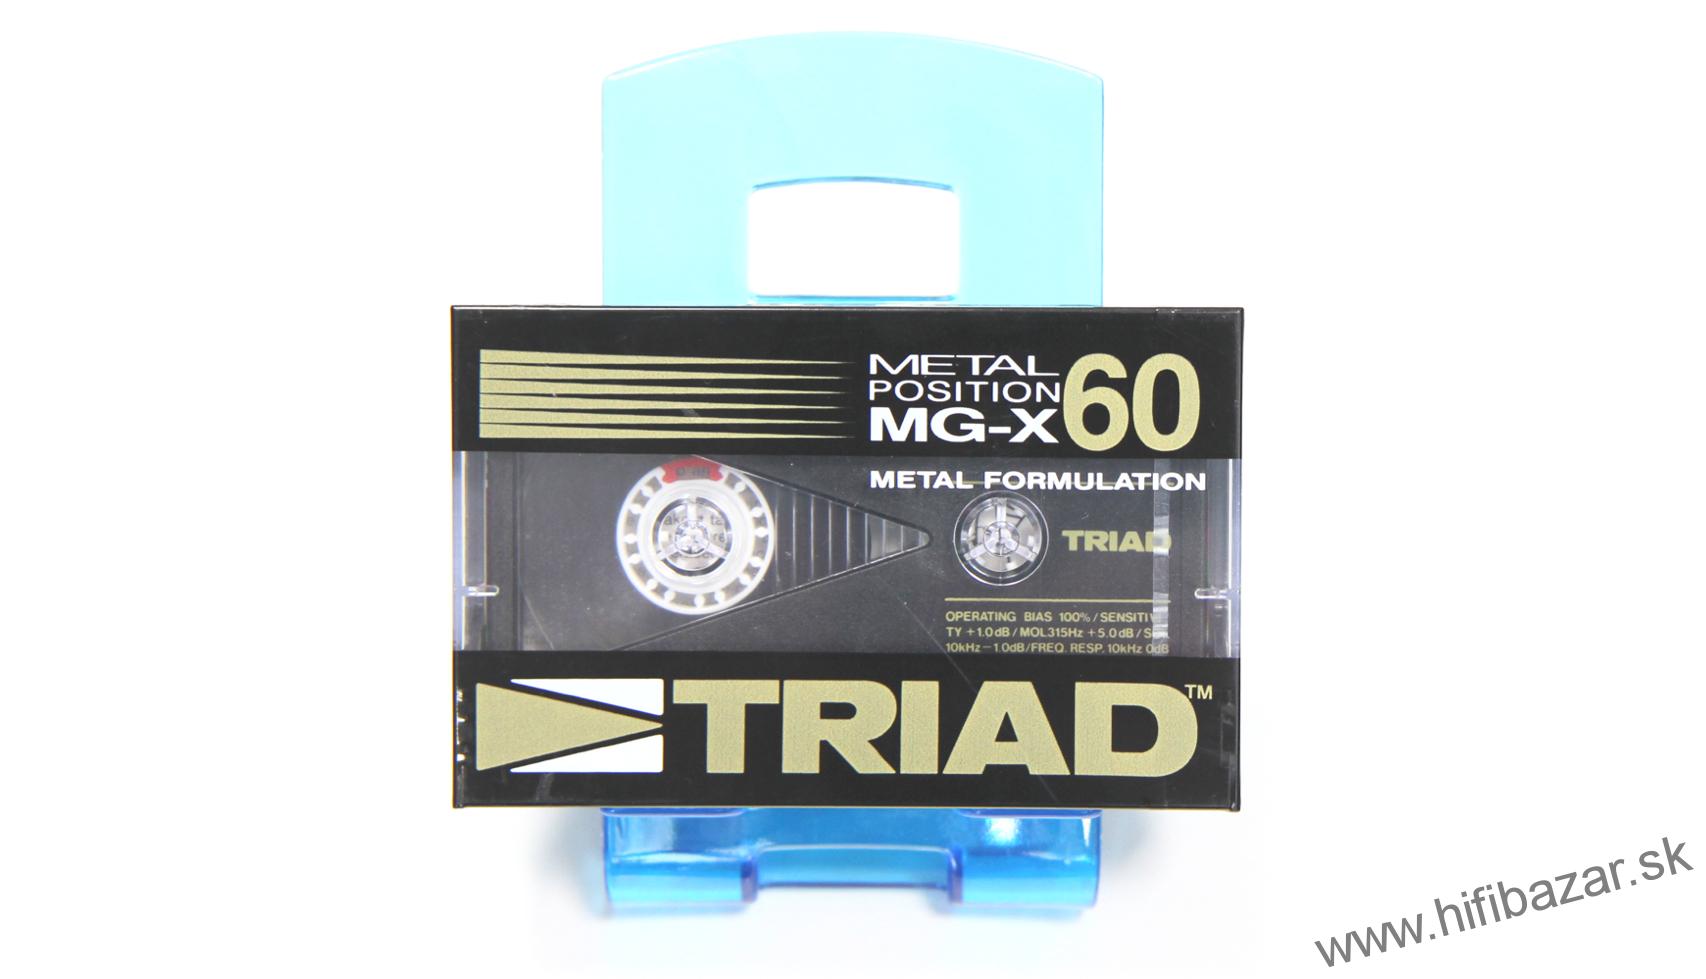 TRIAD MG-X60 Position Metal